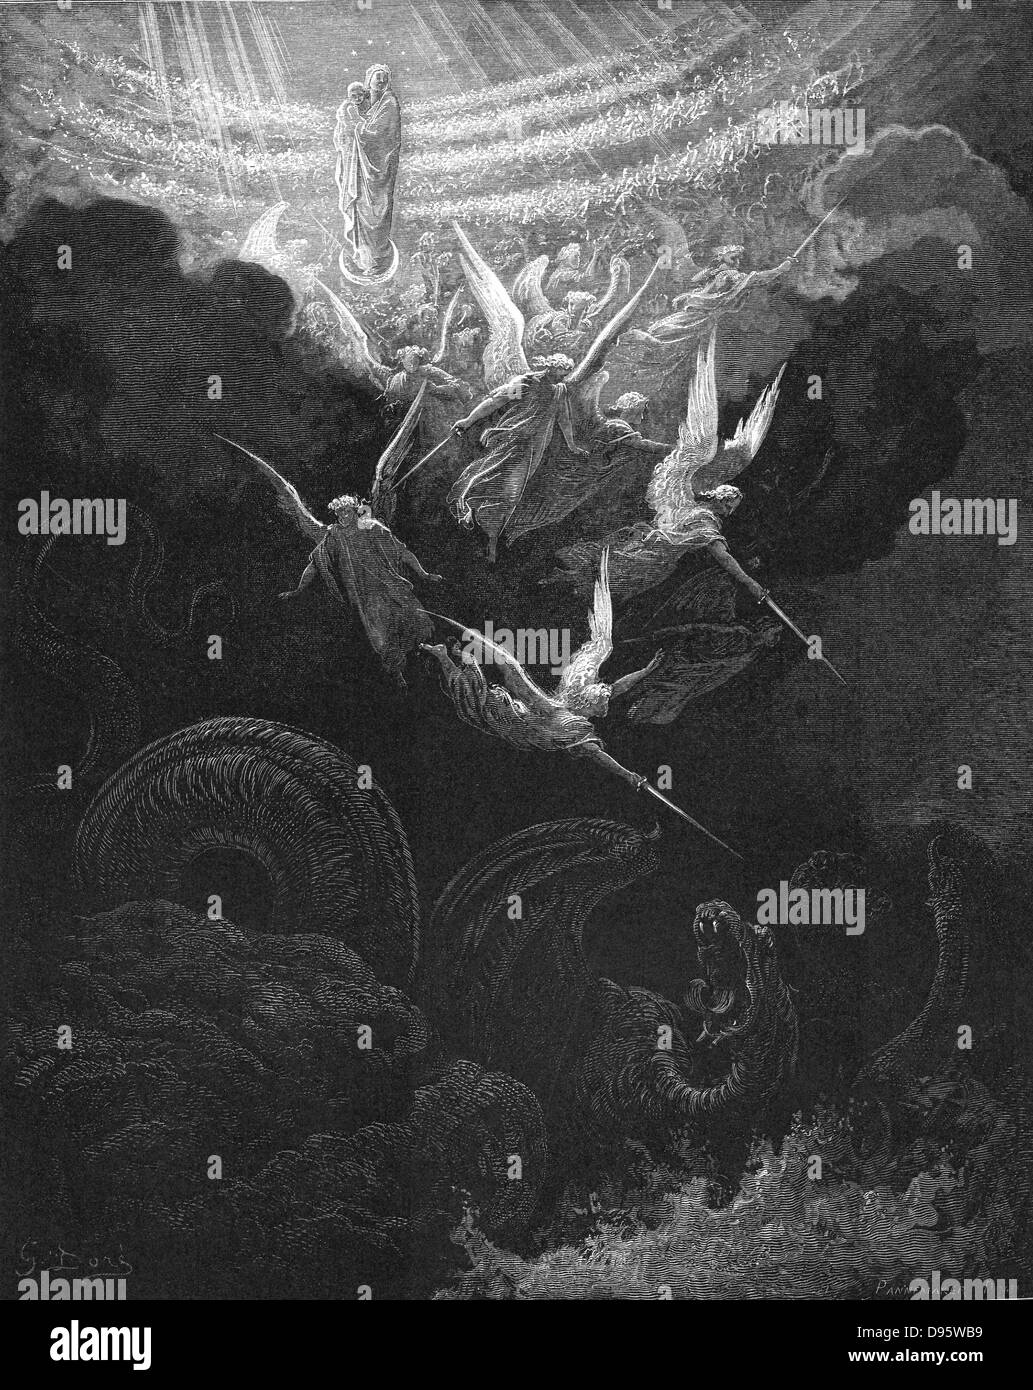 Archange Michel et ses anges combattant le dragon. Vierge Marie avec l'enfant Jésus dans les bras regarde du haut du ciel. Apocalypse 12:1. De Gustave Dore "Bible" en 1865-1866. La gravure sur bois. Banque D'Images